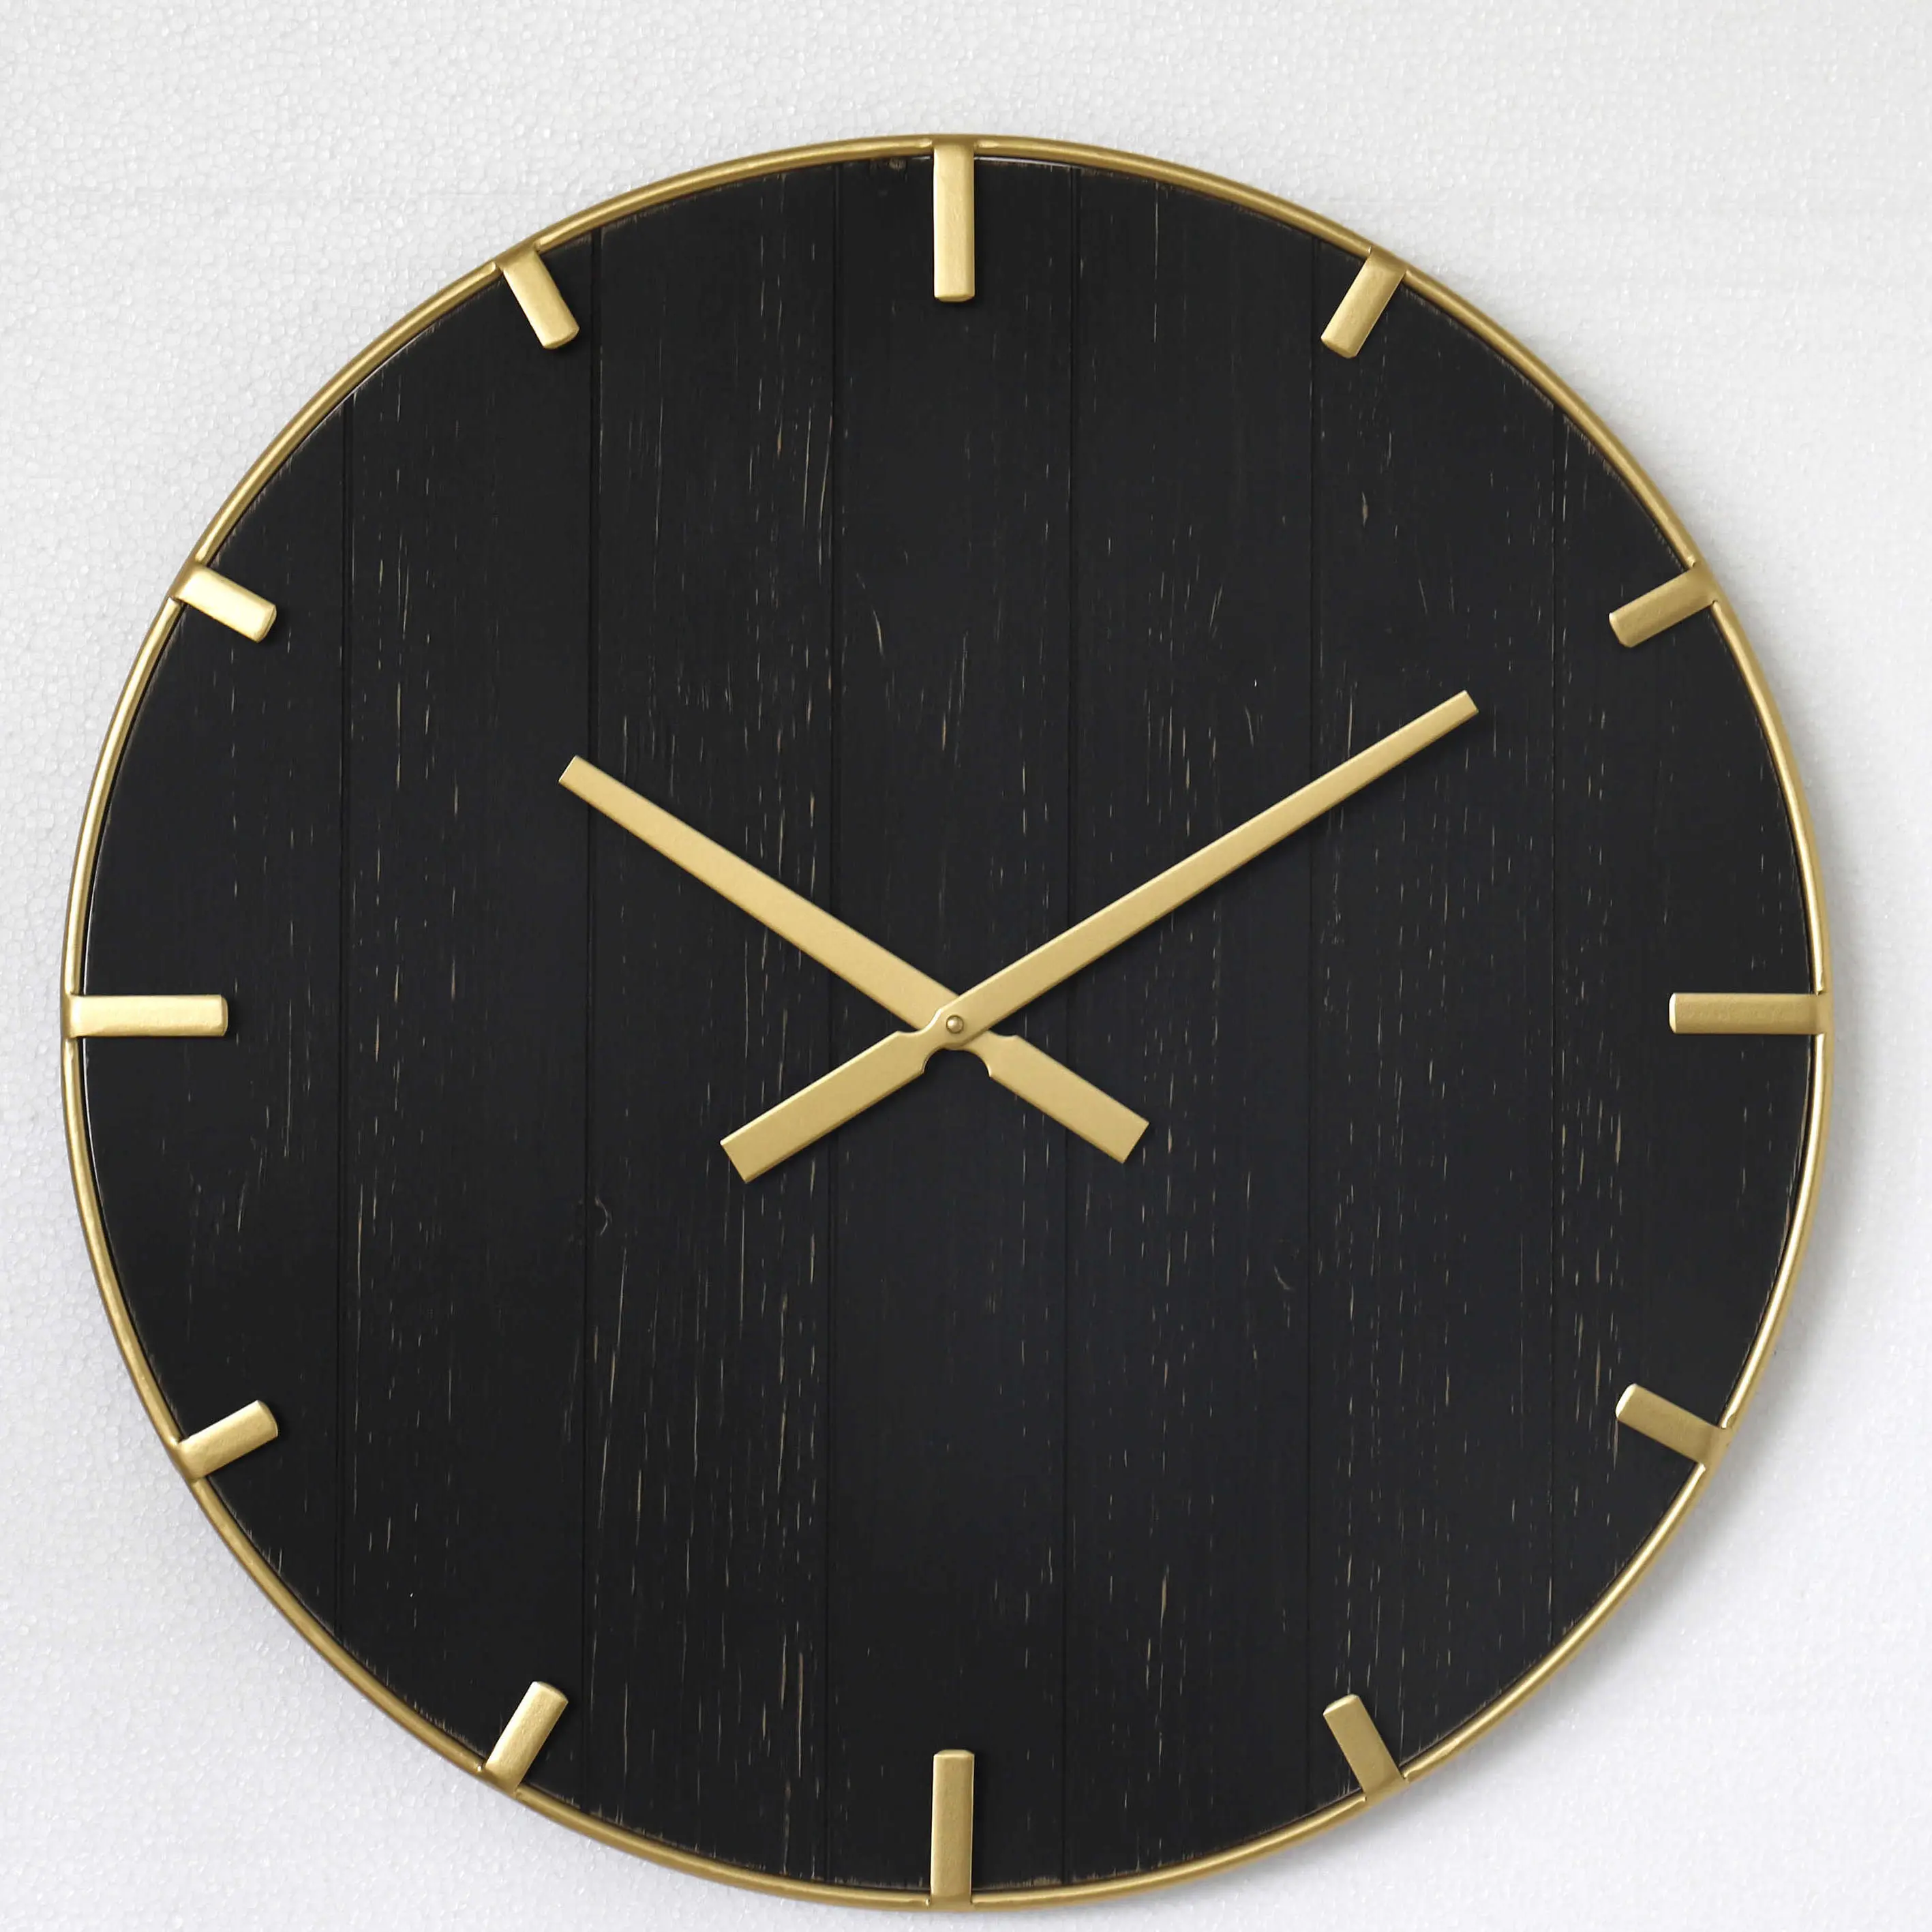 लकड़ी की दीवार घड़ी जहाज के लिए तैयार त्वरित अग्रणी समय सुपरमार्केट के लिए अनुकूलित घड़ी दीवार गृह सजावट